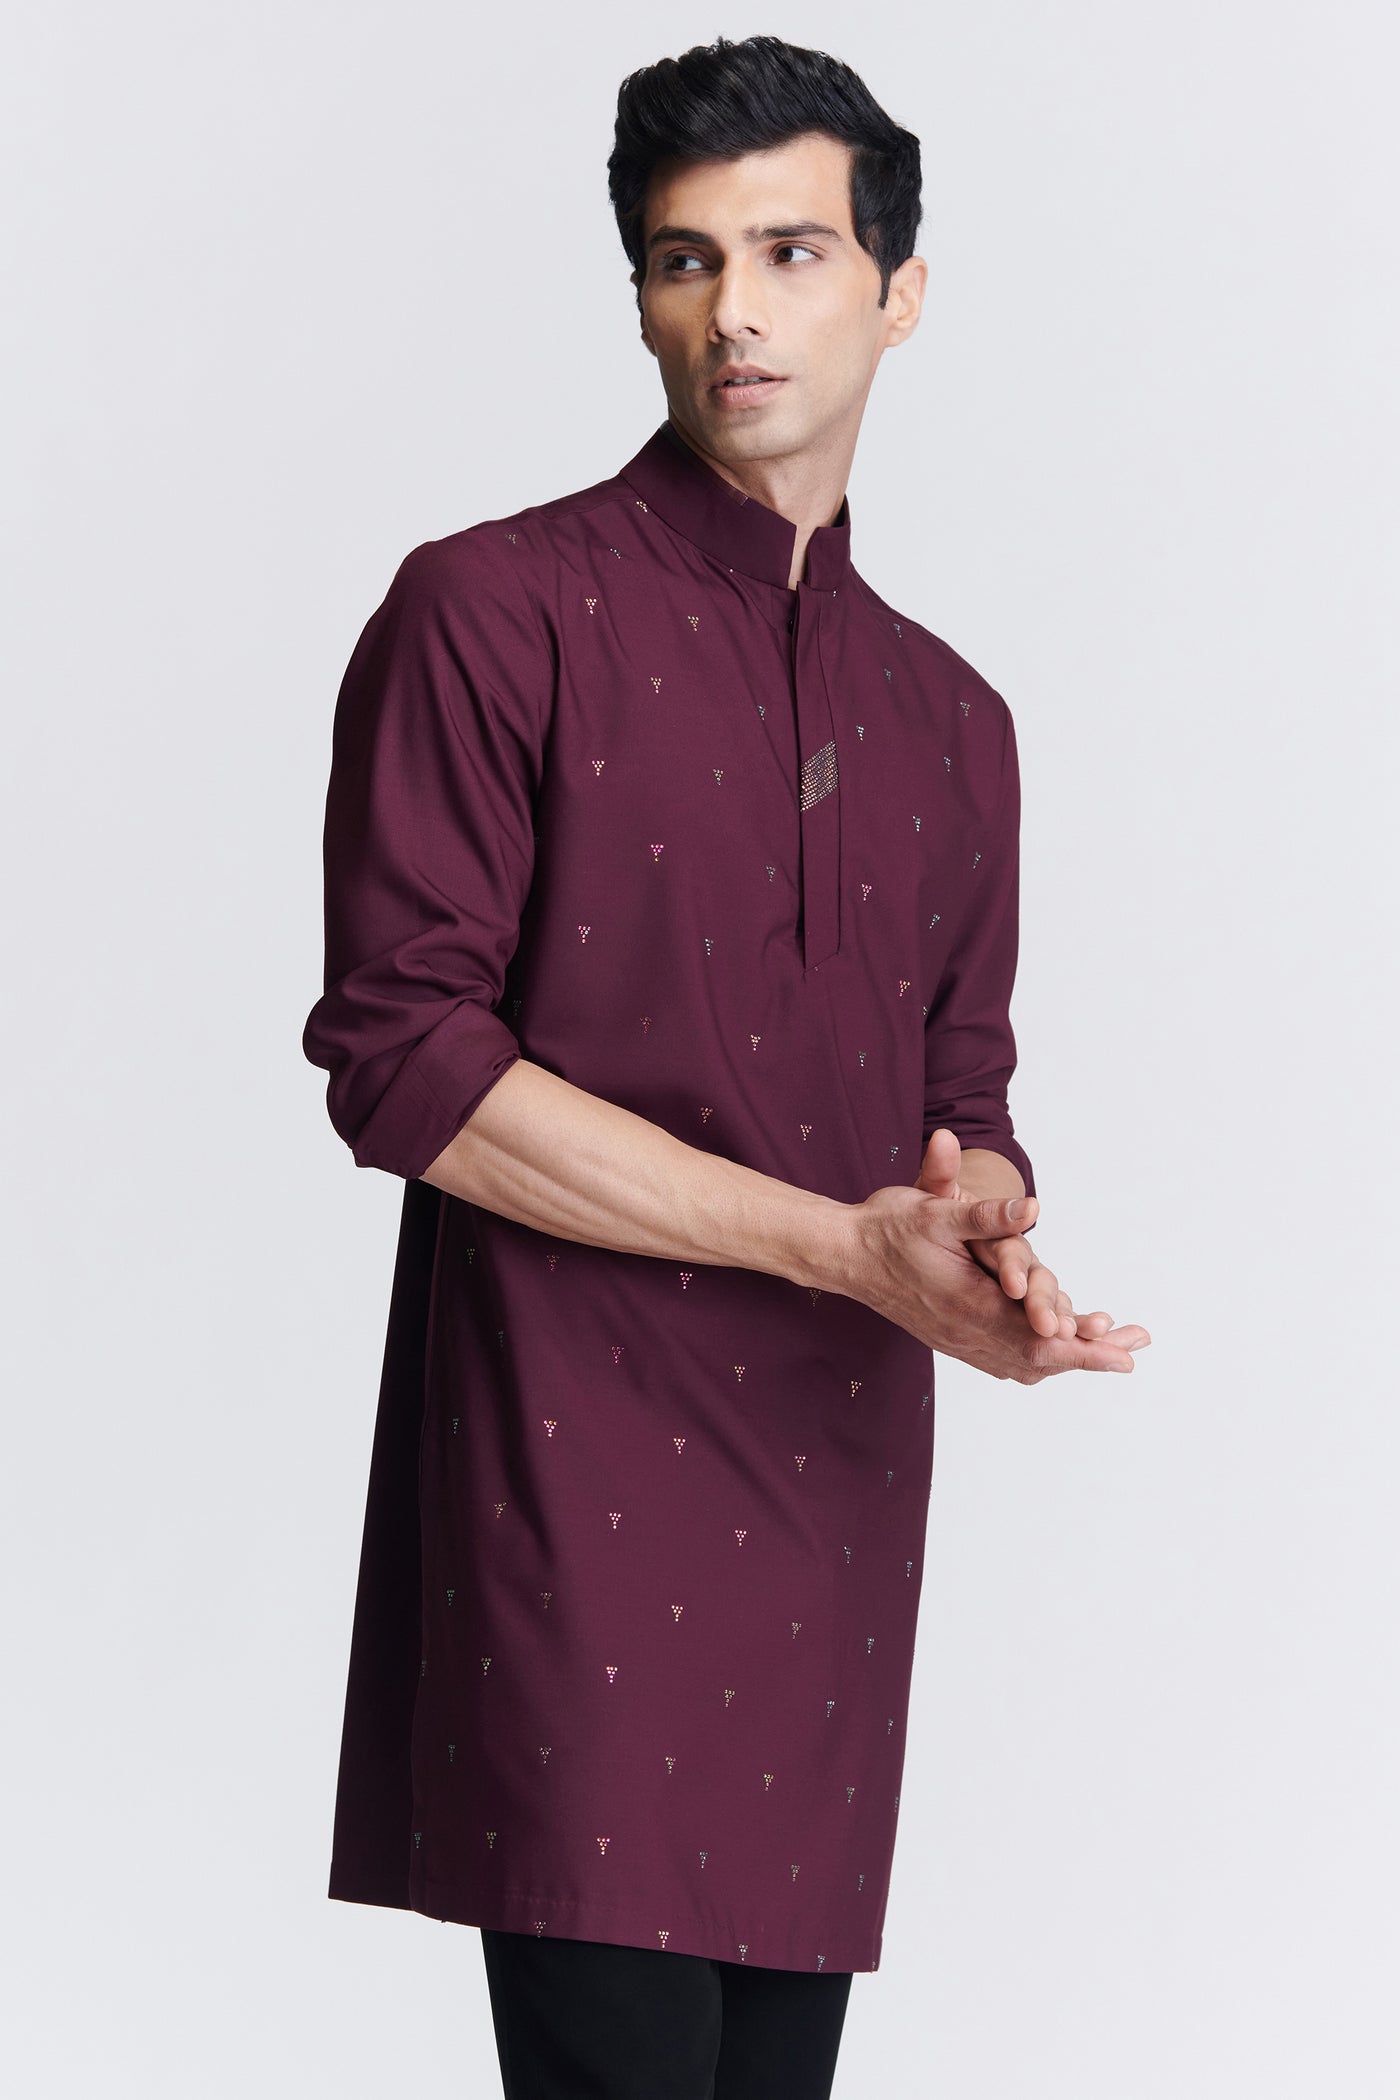 Shantanu & Nikhil Menswear Plum Embellished Kurta indian designer wear online shopping melange singapore